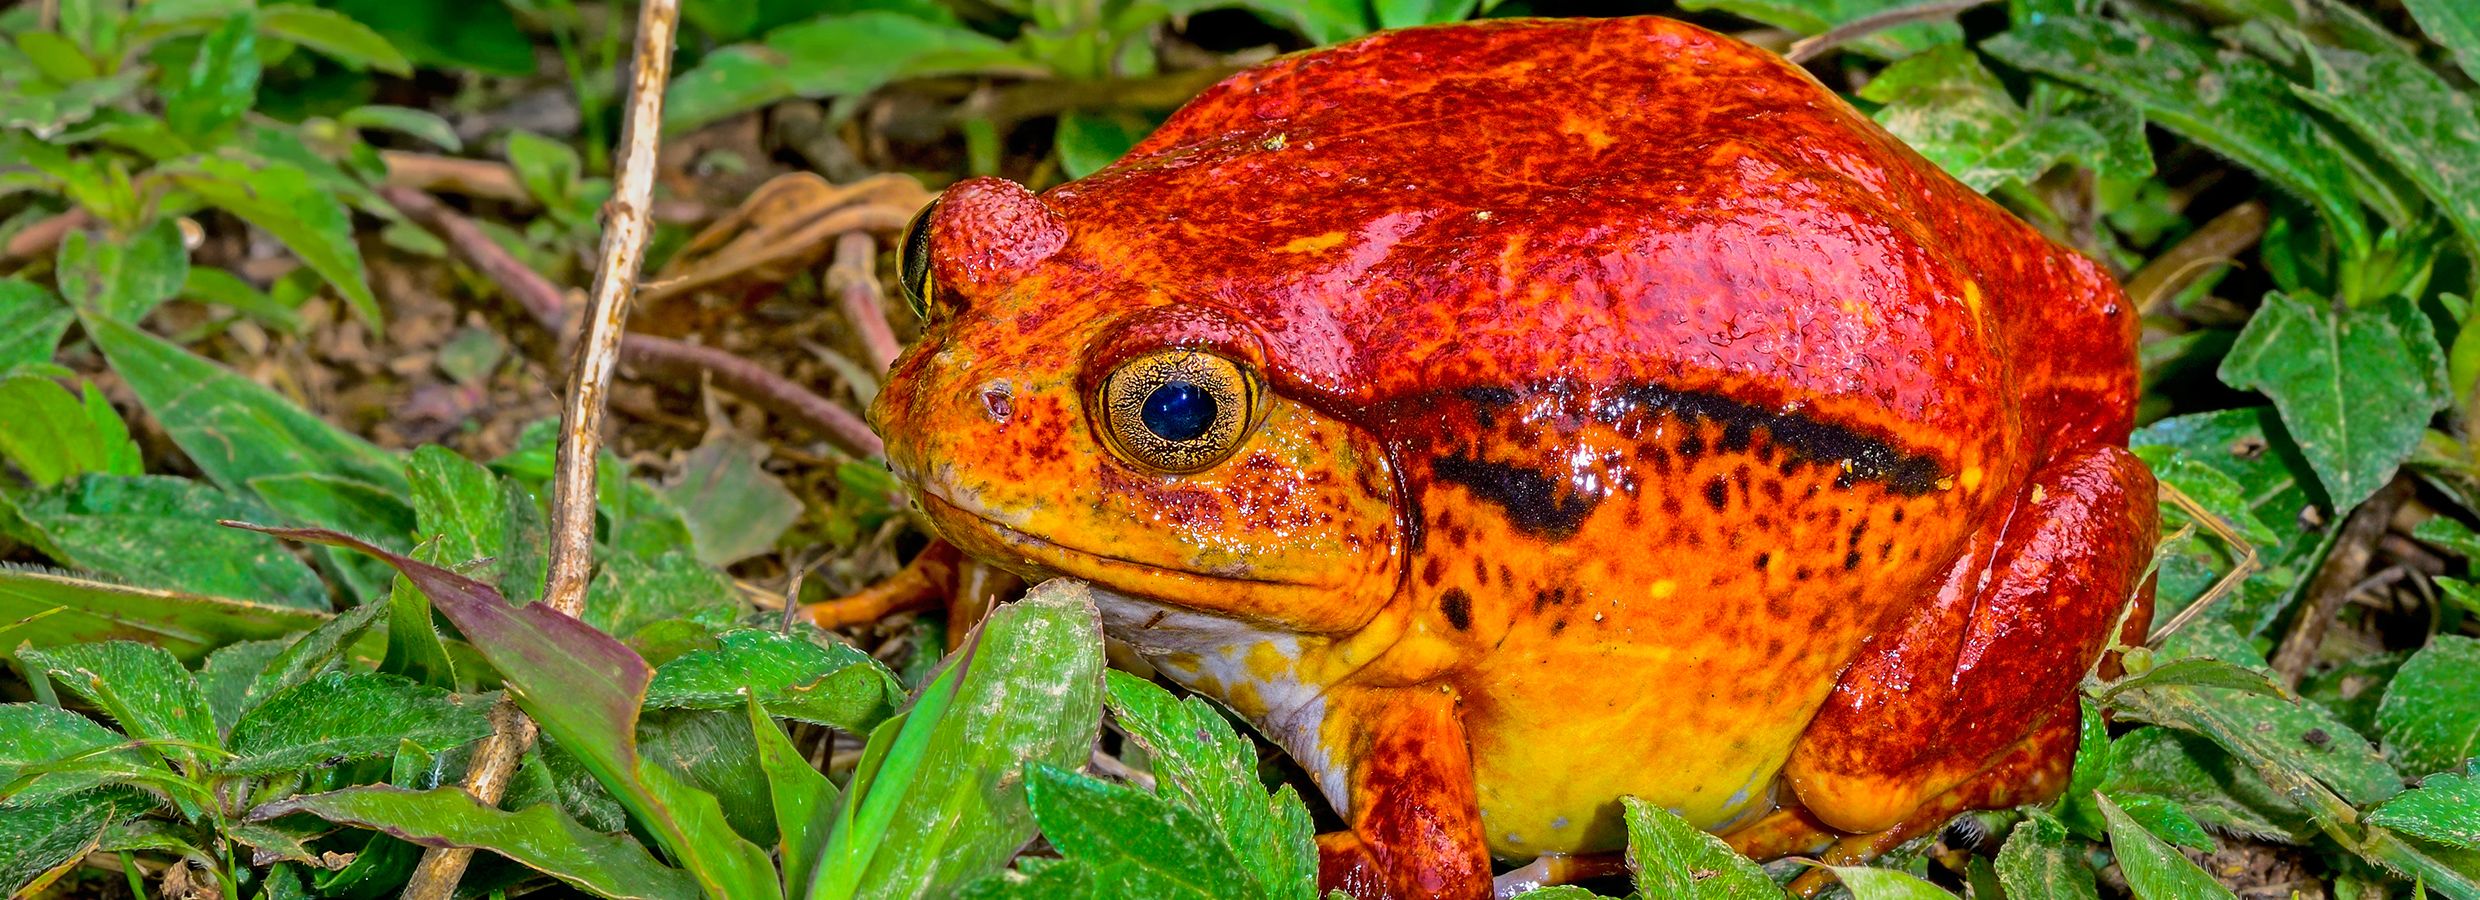 frog information sheet